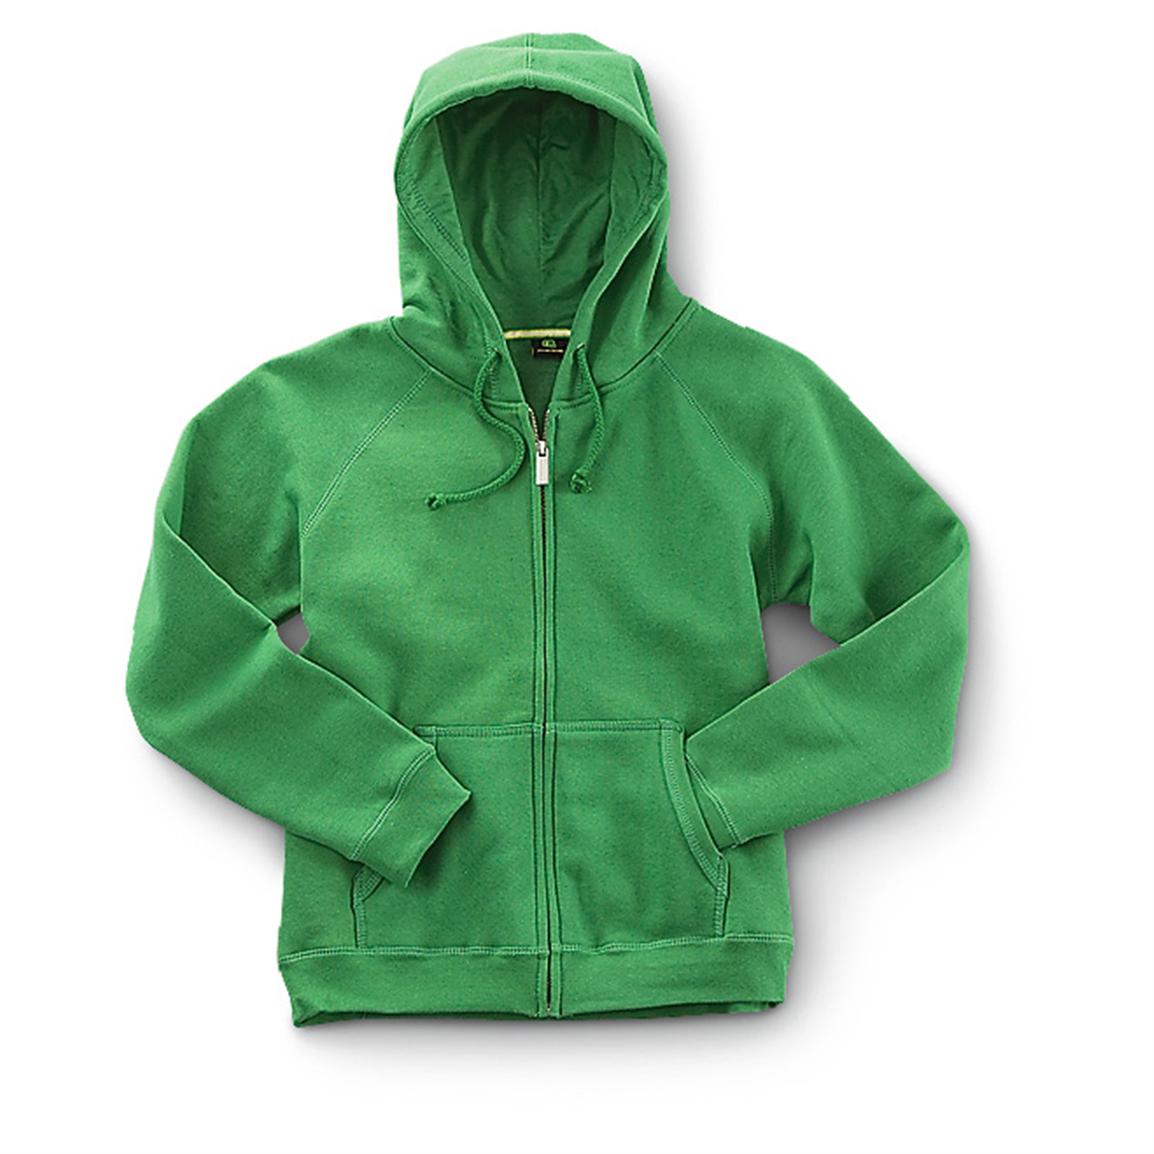 Download 2 Women's John Deere® Zip - front Hoodies, 1 Green / 1 Pink - 171017, Sweatshirts & Hoodies at ...